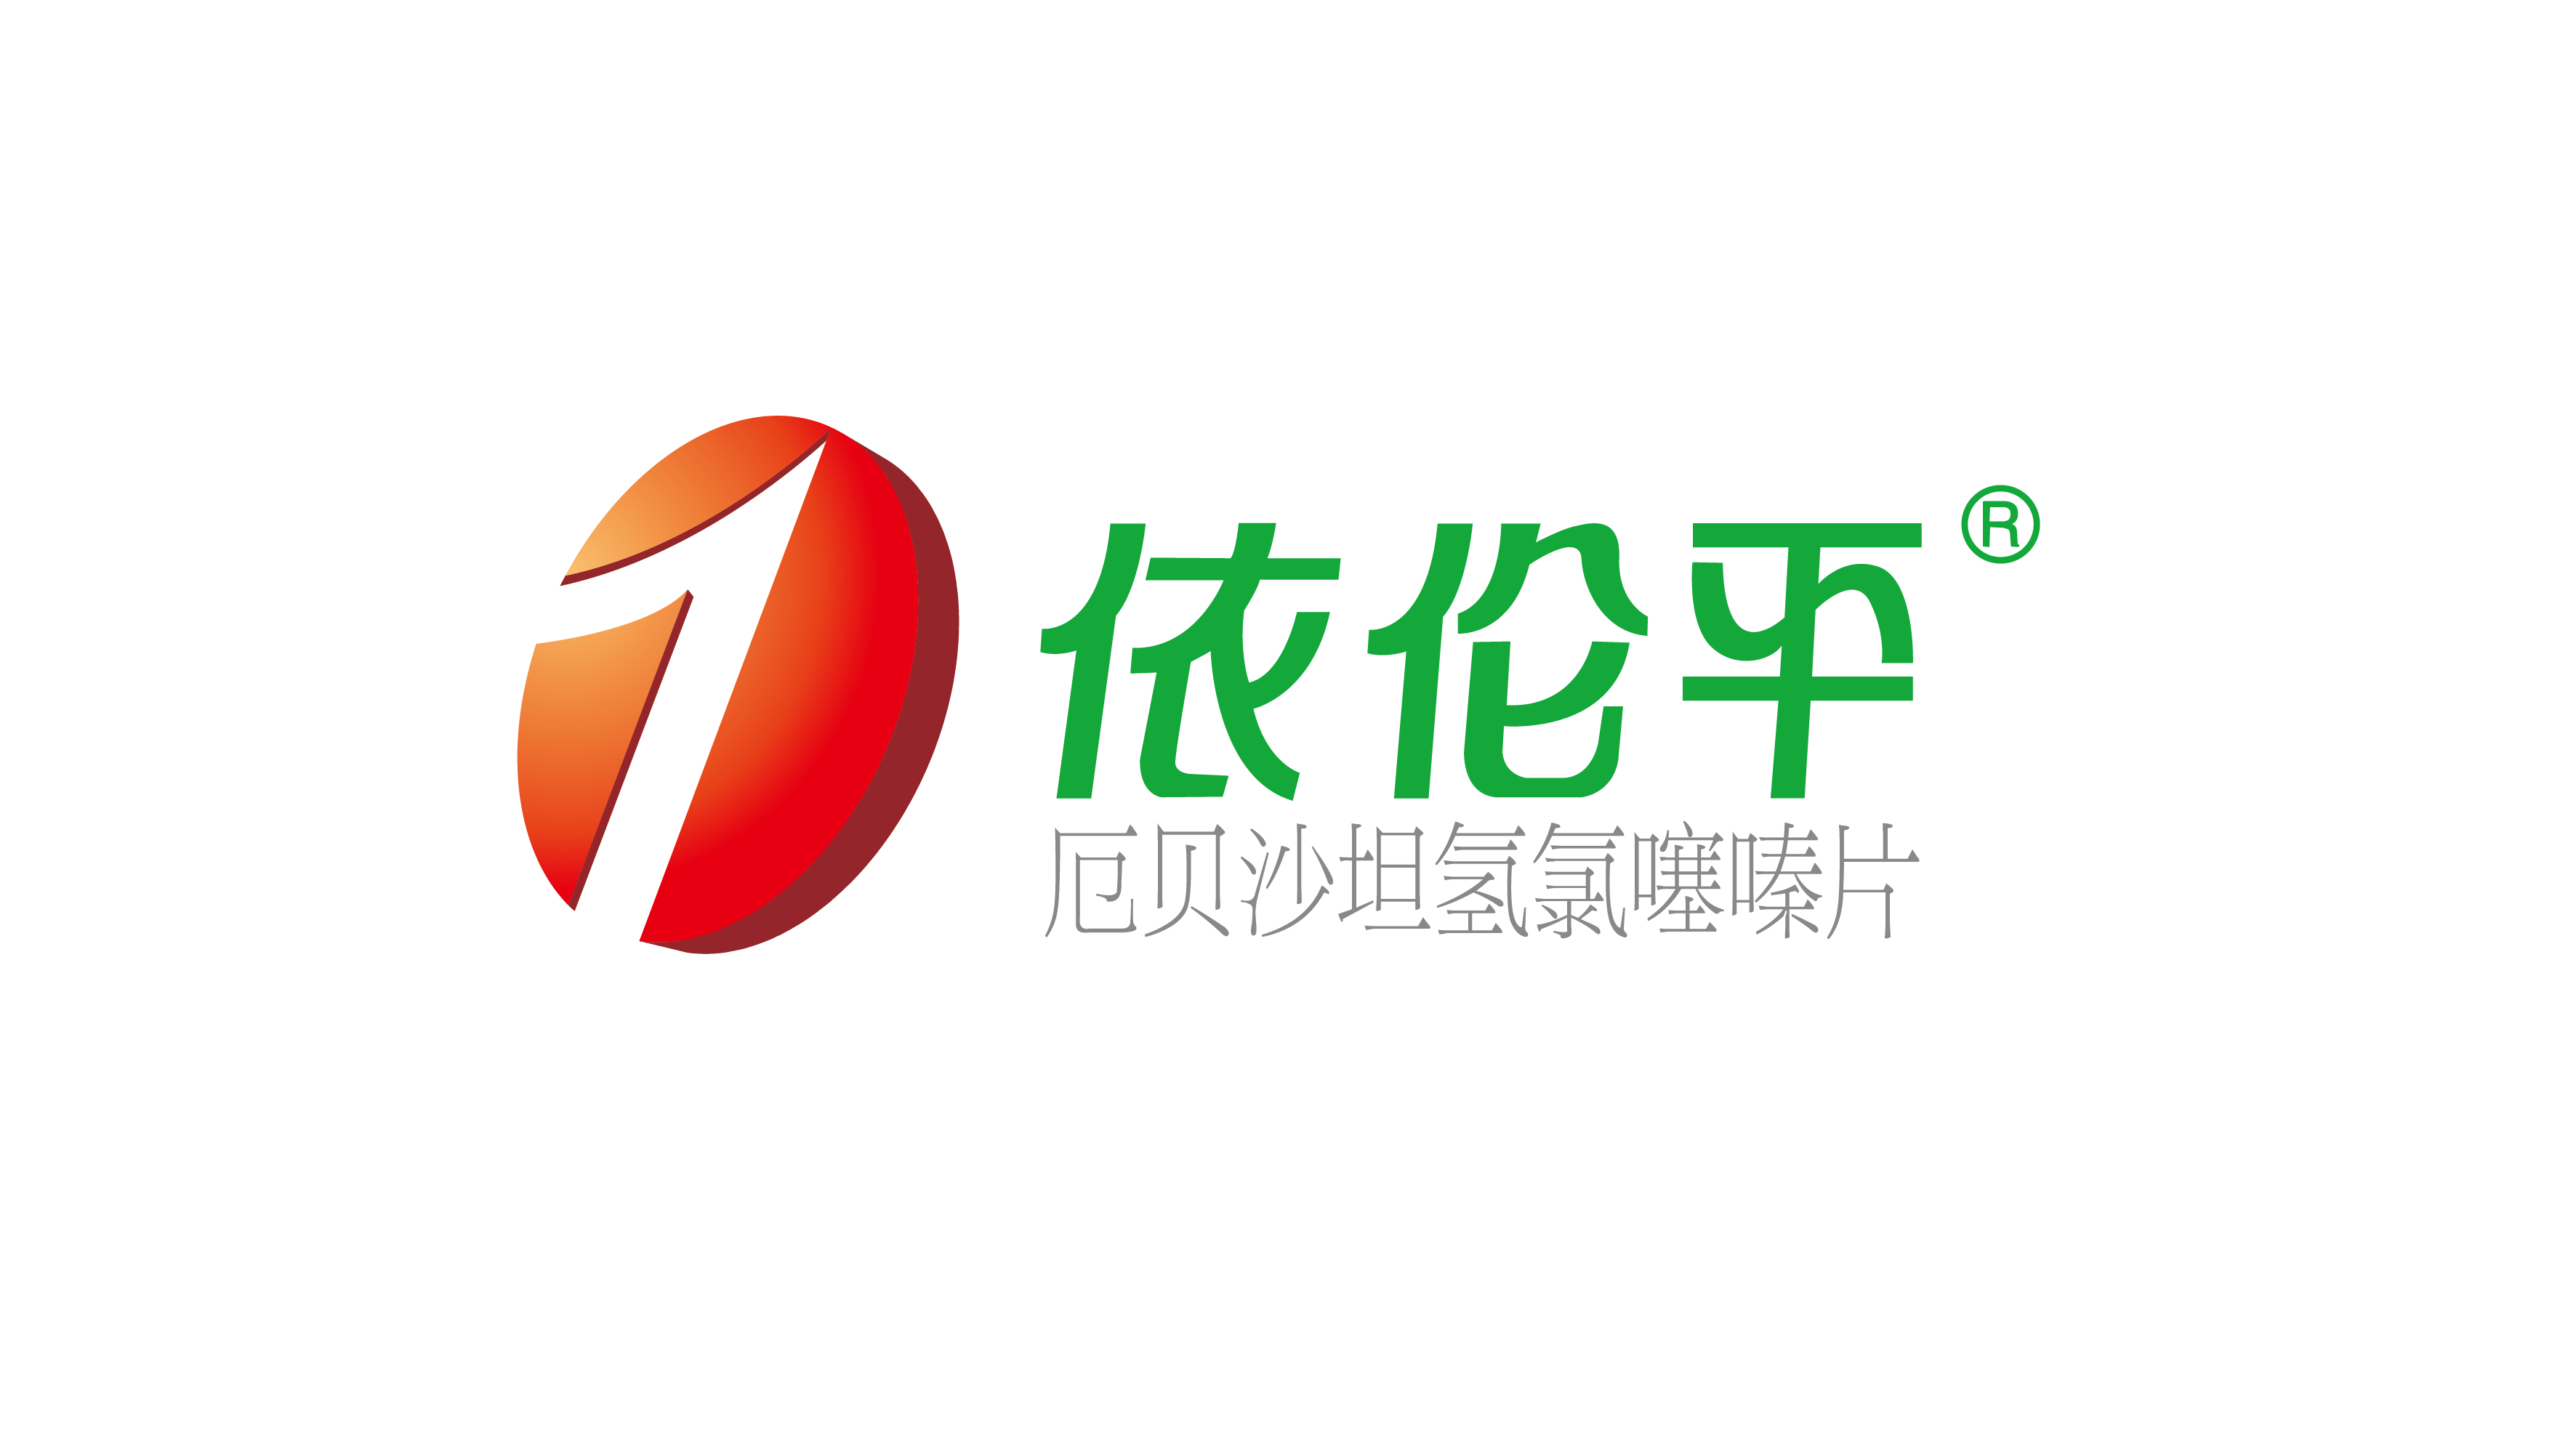 依伦平logo